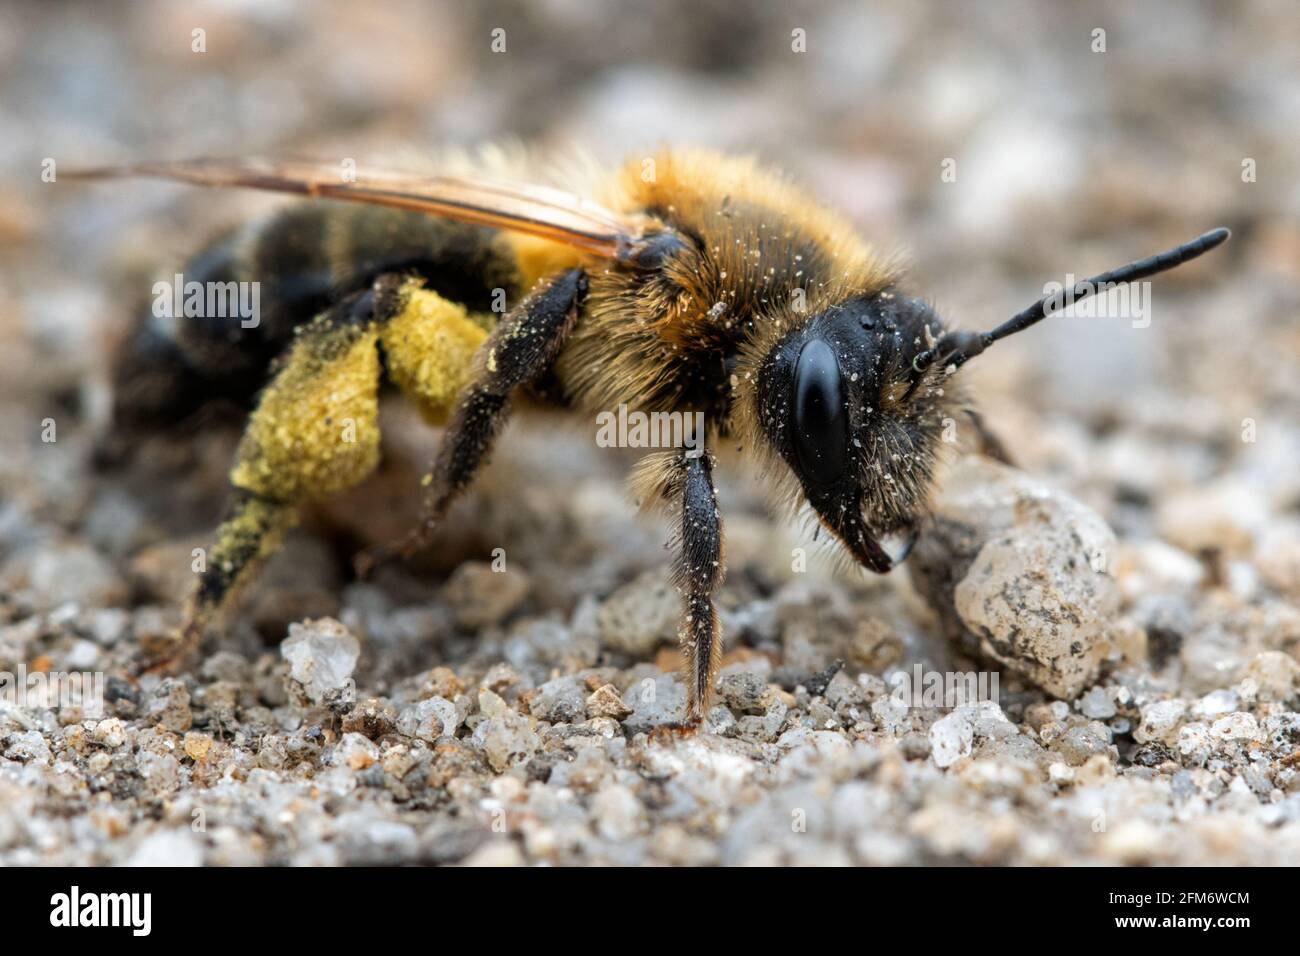 Fauna selvatica del Regno Unito: Ape mineraria (probabilmente Andrena Flavipes - ape mineraria con zampe gialle (sotto tutto quel polline!)) Yorkshire occidentale Foto Stock